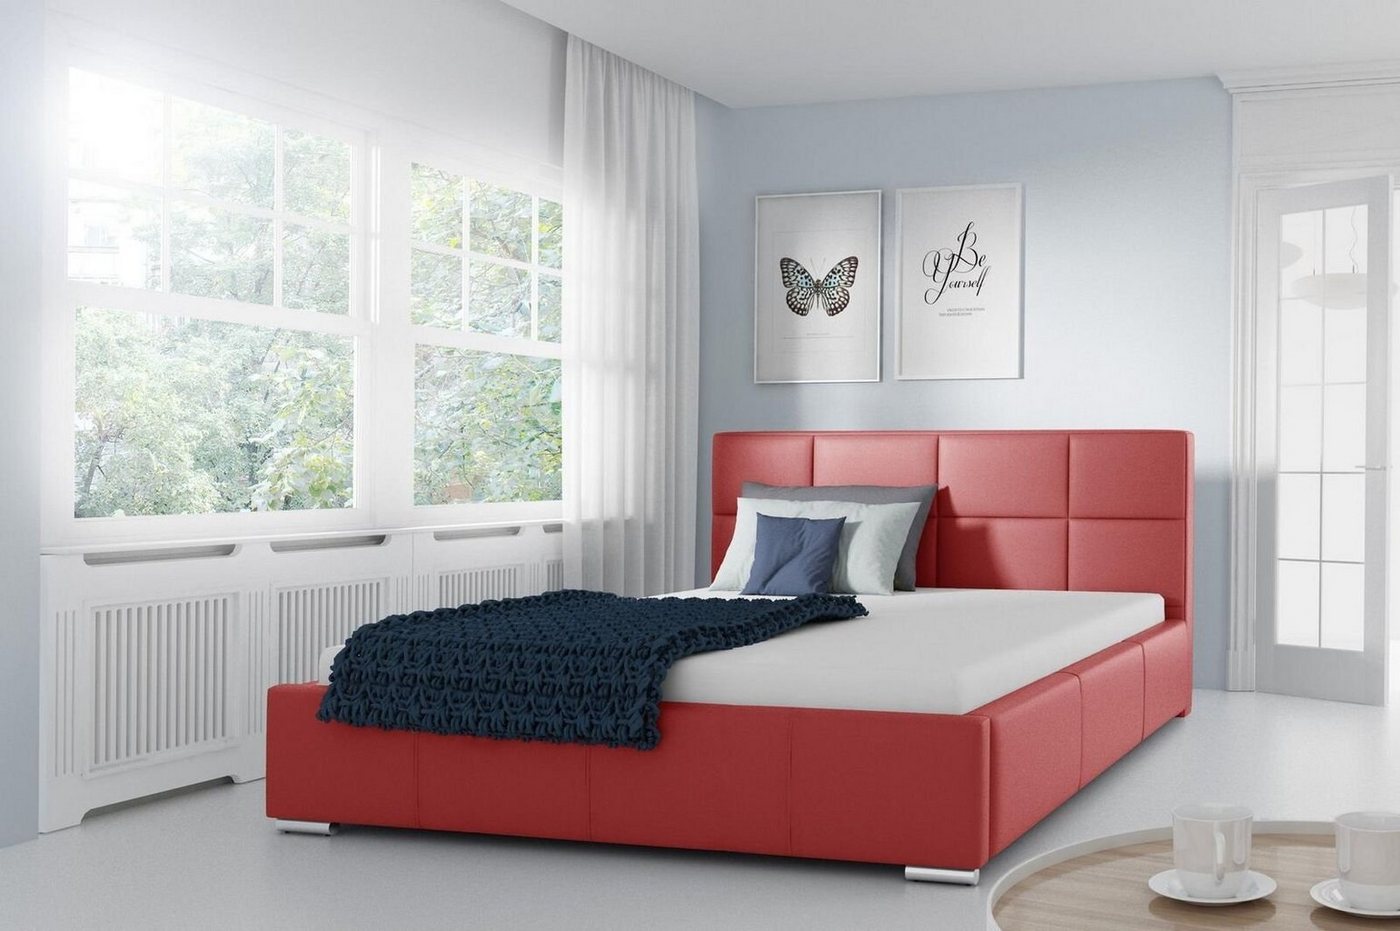 JVmoebel Lederbett, Doppel Bett Gepolsterte Design Luxus Möbel 200x200 Bettrahmen von JVmoebel